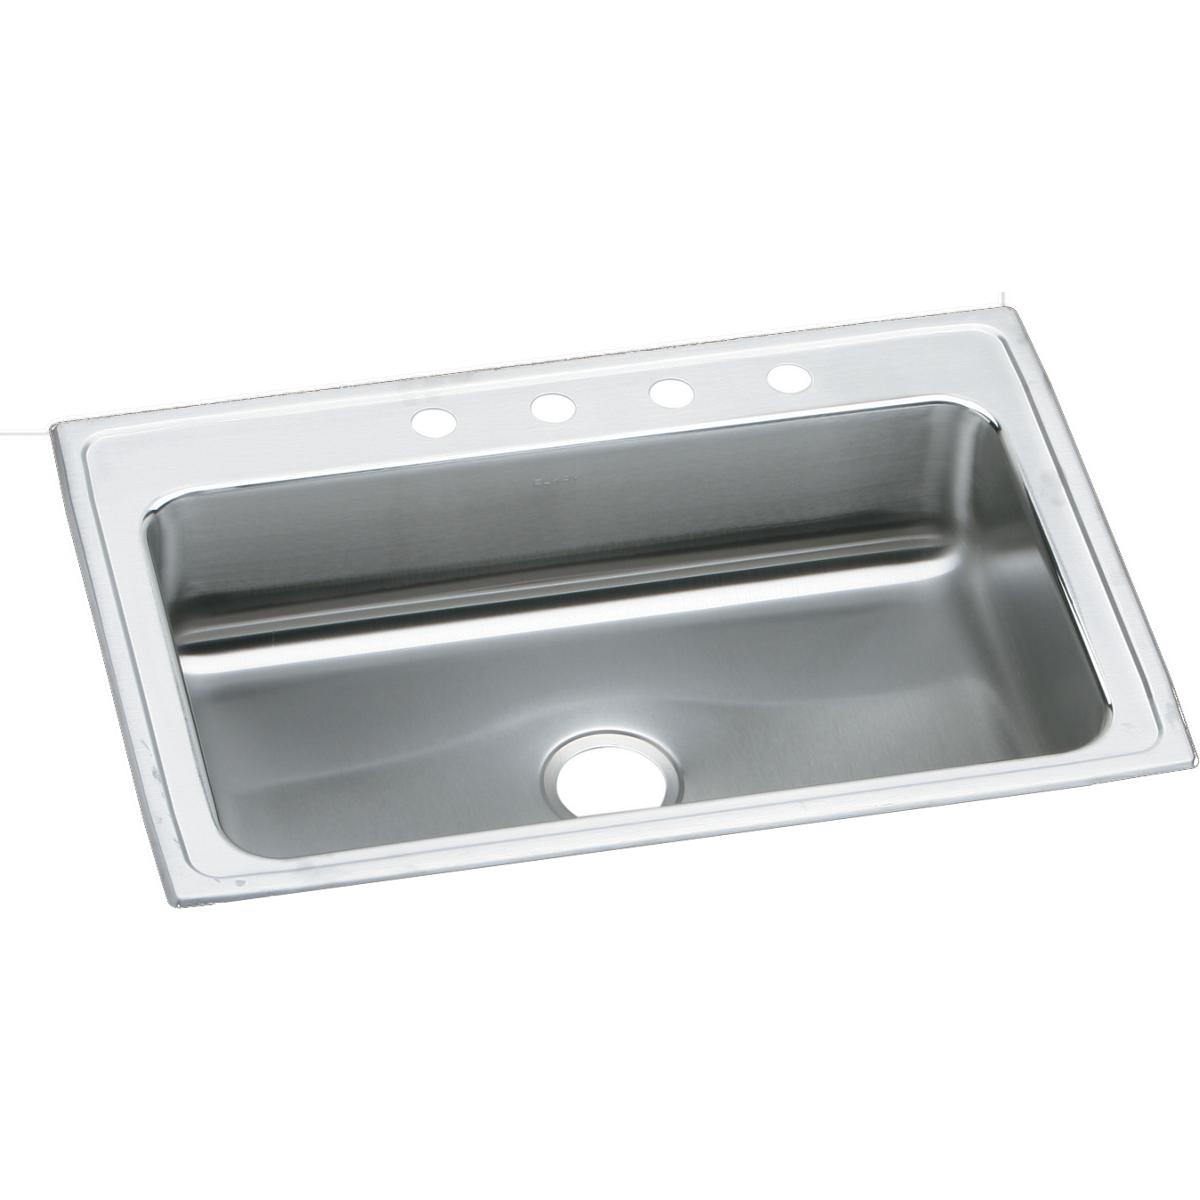 Elkay 33" x 22" x 7-5/8" Lustertone Classic Stainless Steel Single Bowl Drop-in Sink